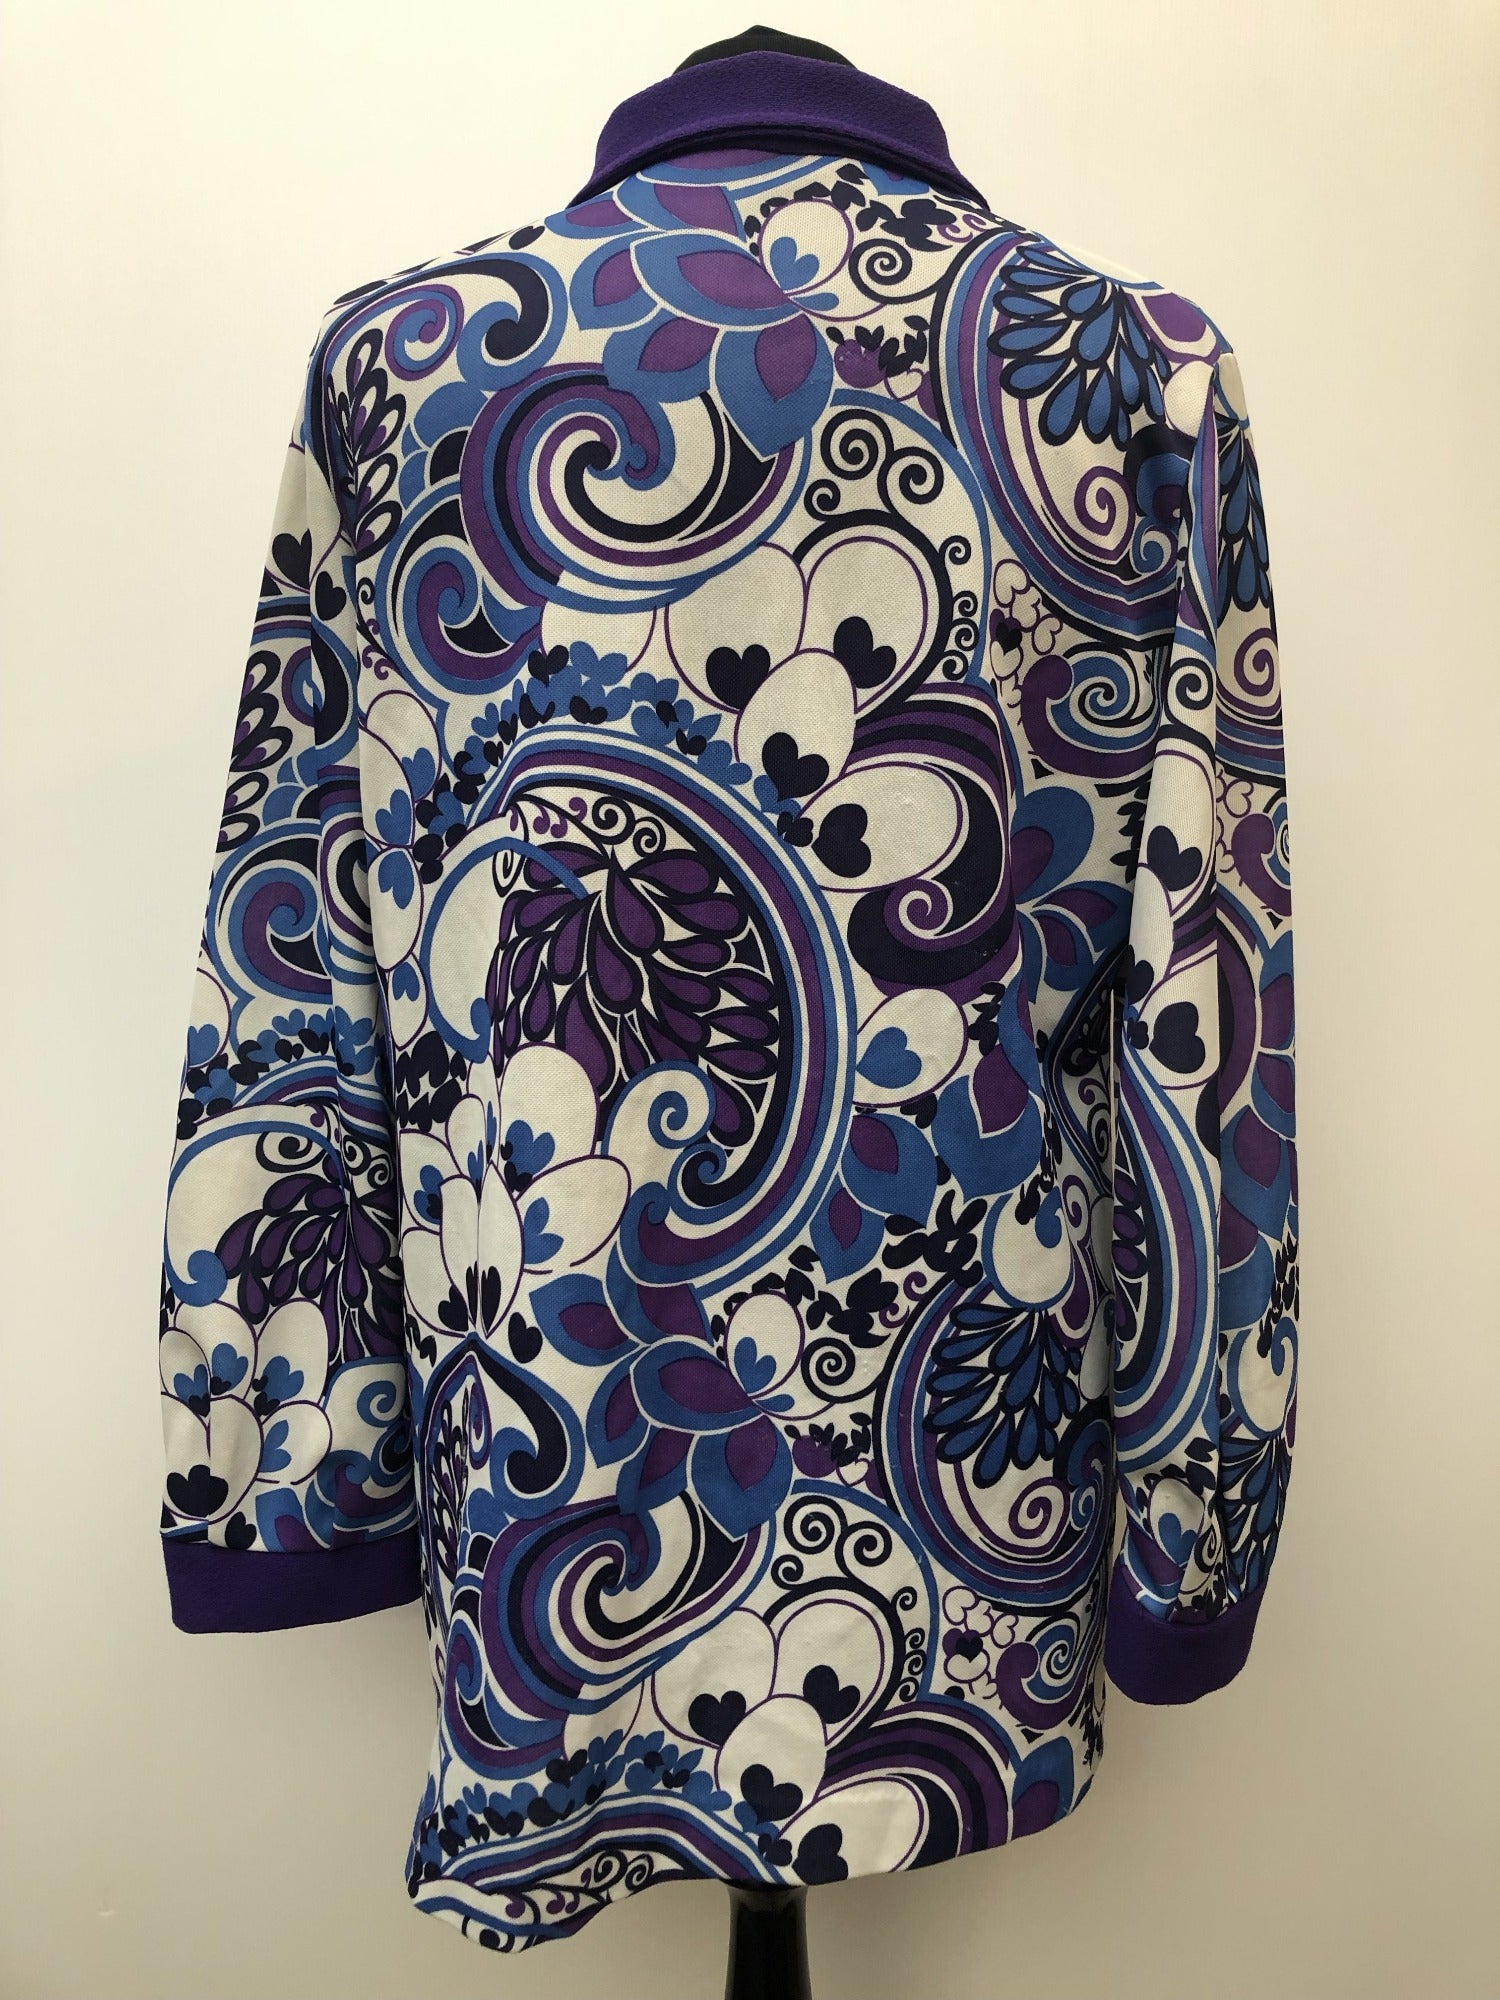 womens  vintage  Urban Village Vintage  top  purple  multi  floral print  dagger collar  Blue  blouse  70s  1970s  16